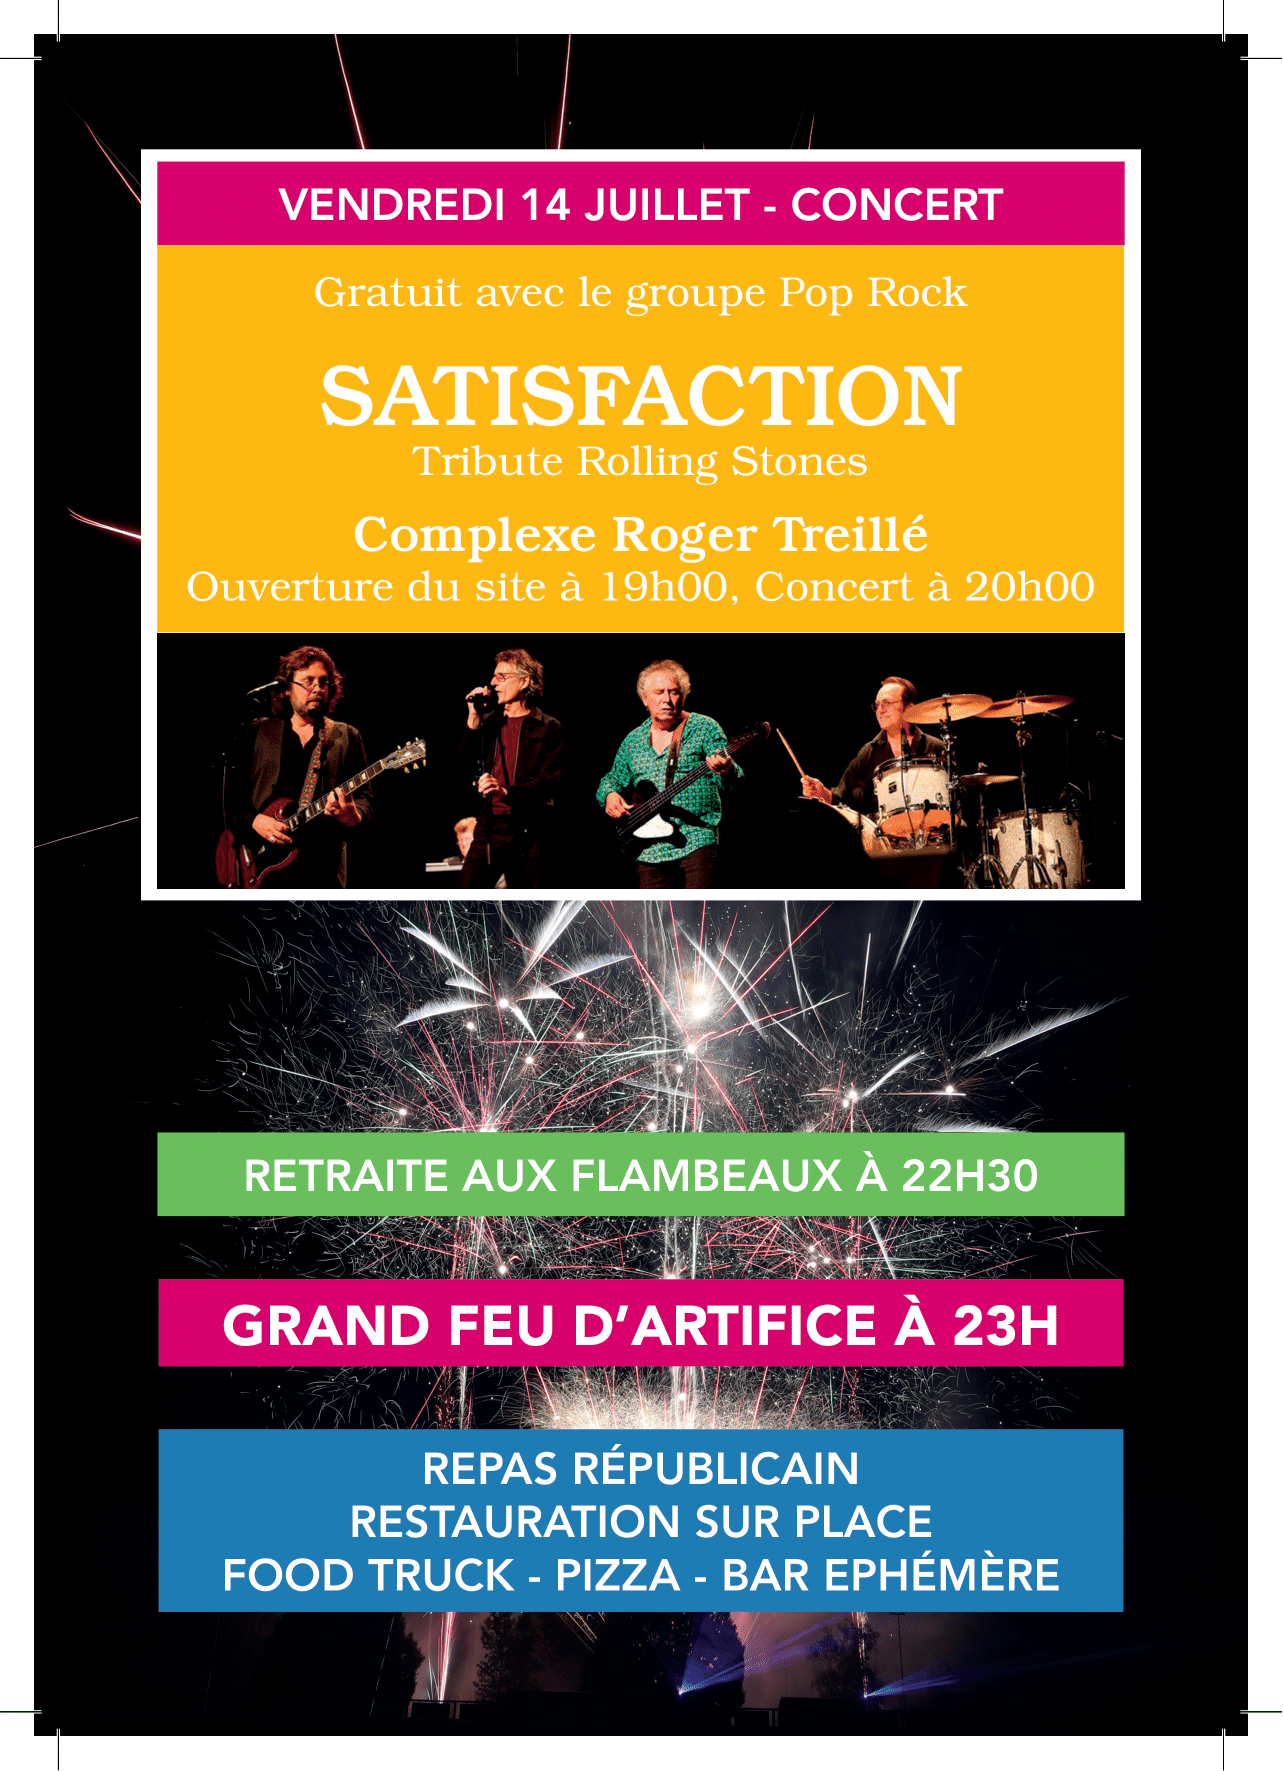 Concert avec "SATISFACTION" suivi du Grand Feu d'Artifice - Vendredi 14 Juillet